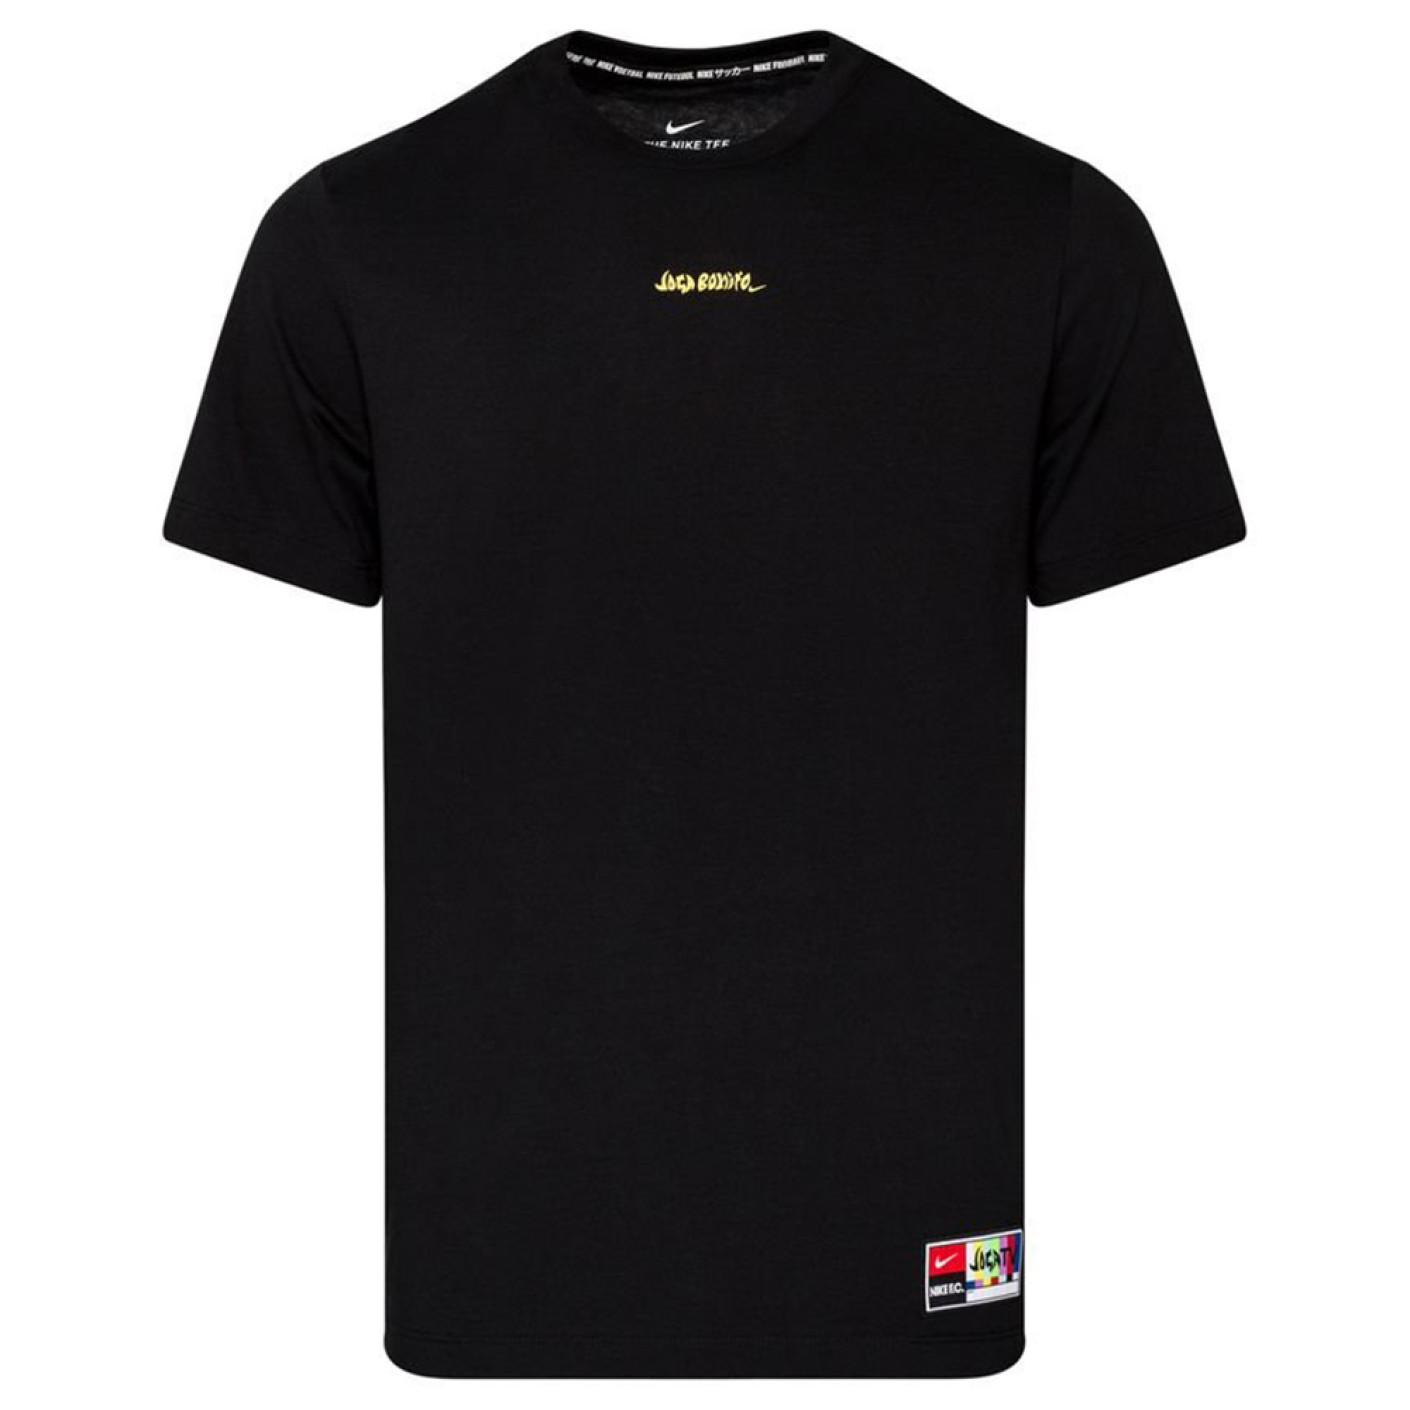 Nike F.C. T-Shirt Joga Bonito Black